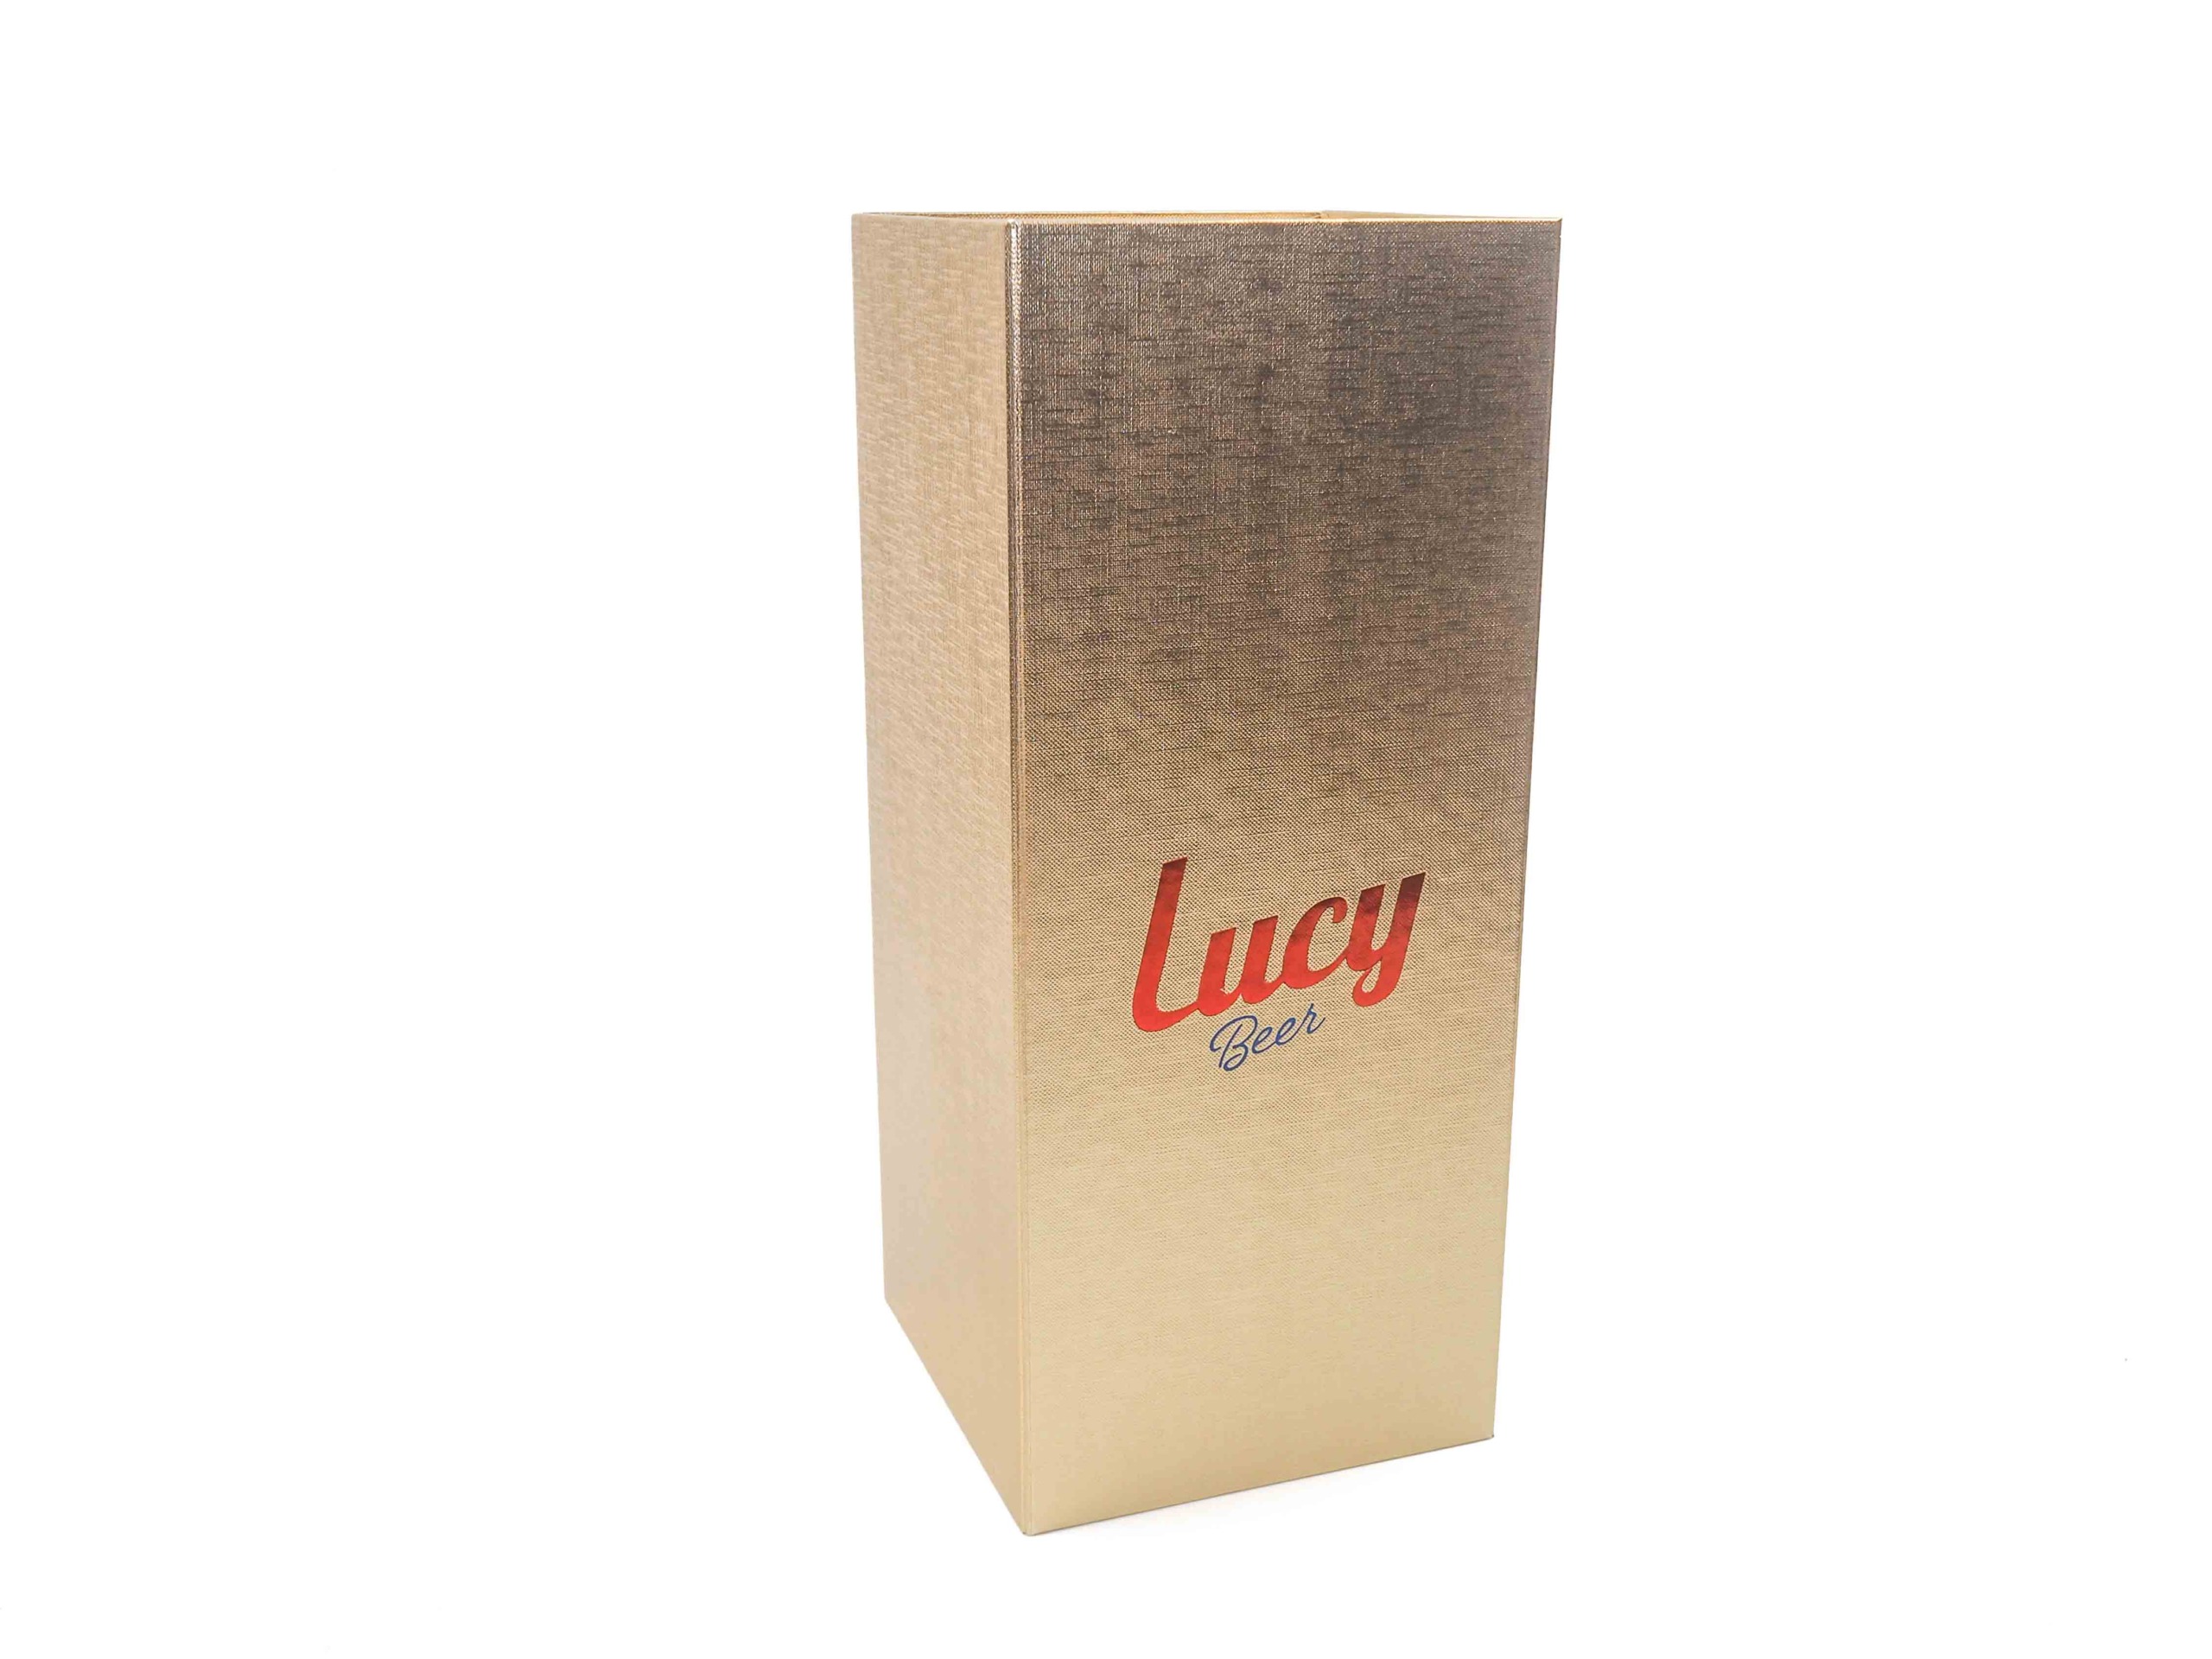 Dárková krabička s magnetickým zavíráním byla vyrobena na zakázku na vložení trofeje kulturistické show EVLS Prague. Uvnitř byla vyrobena pevná vložka potažená červeným saténem. Zvenku byla použita ražba loga a vyroben papírový rukáv na ochranu krabičky.